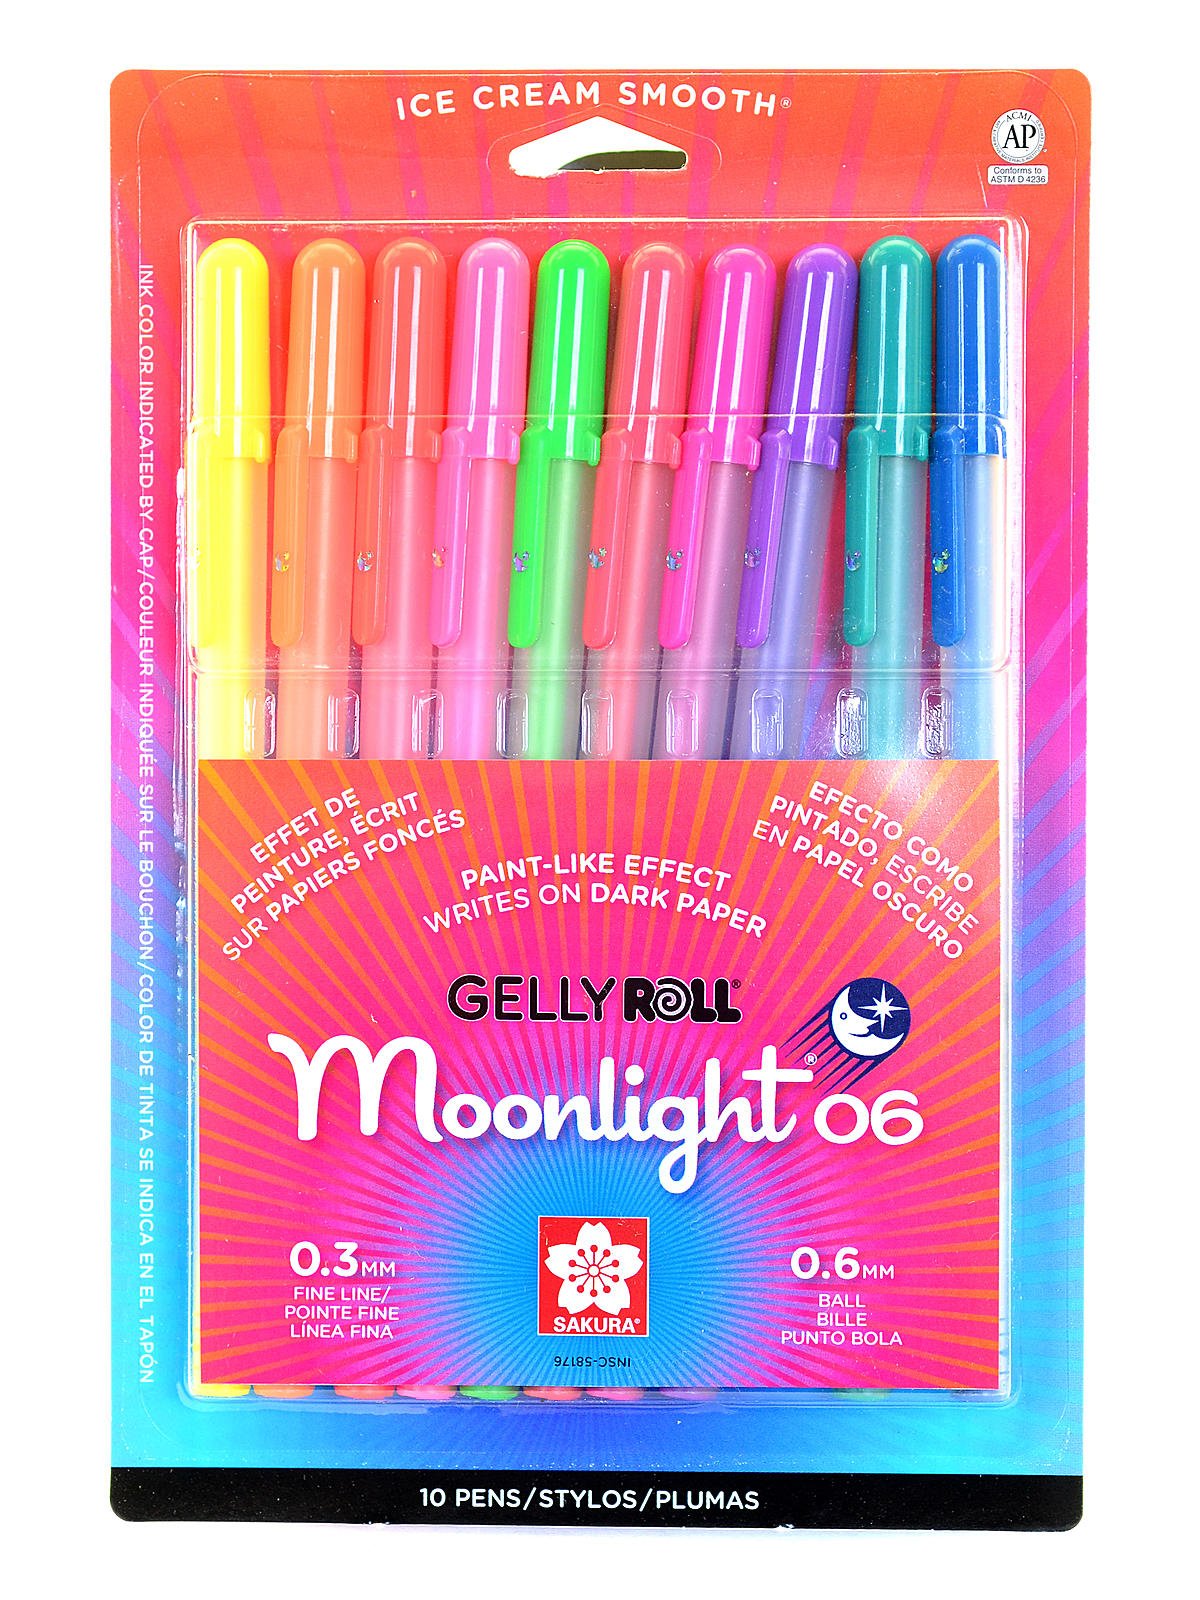 Sakura Gelly Roll 06 Moonlight Gel Pen 0.3mm Ultramarine